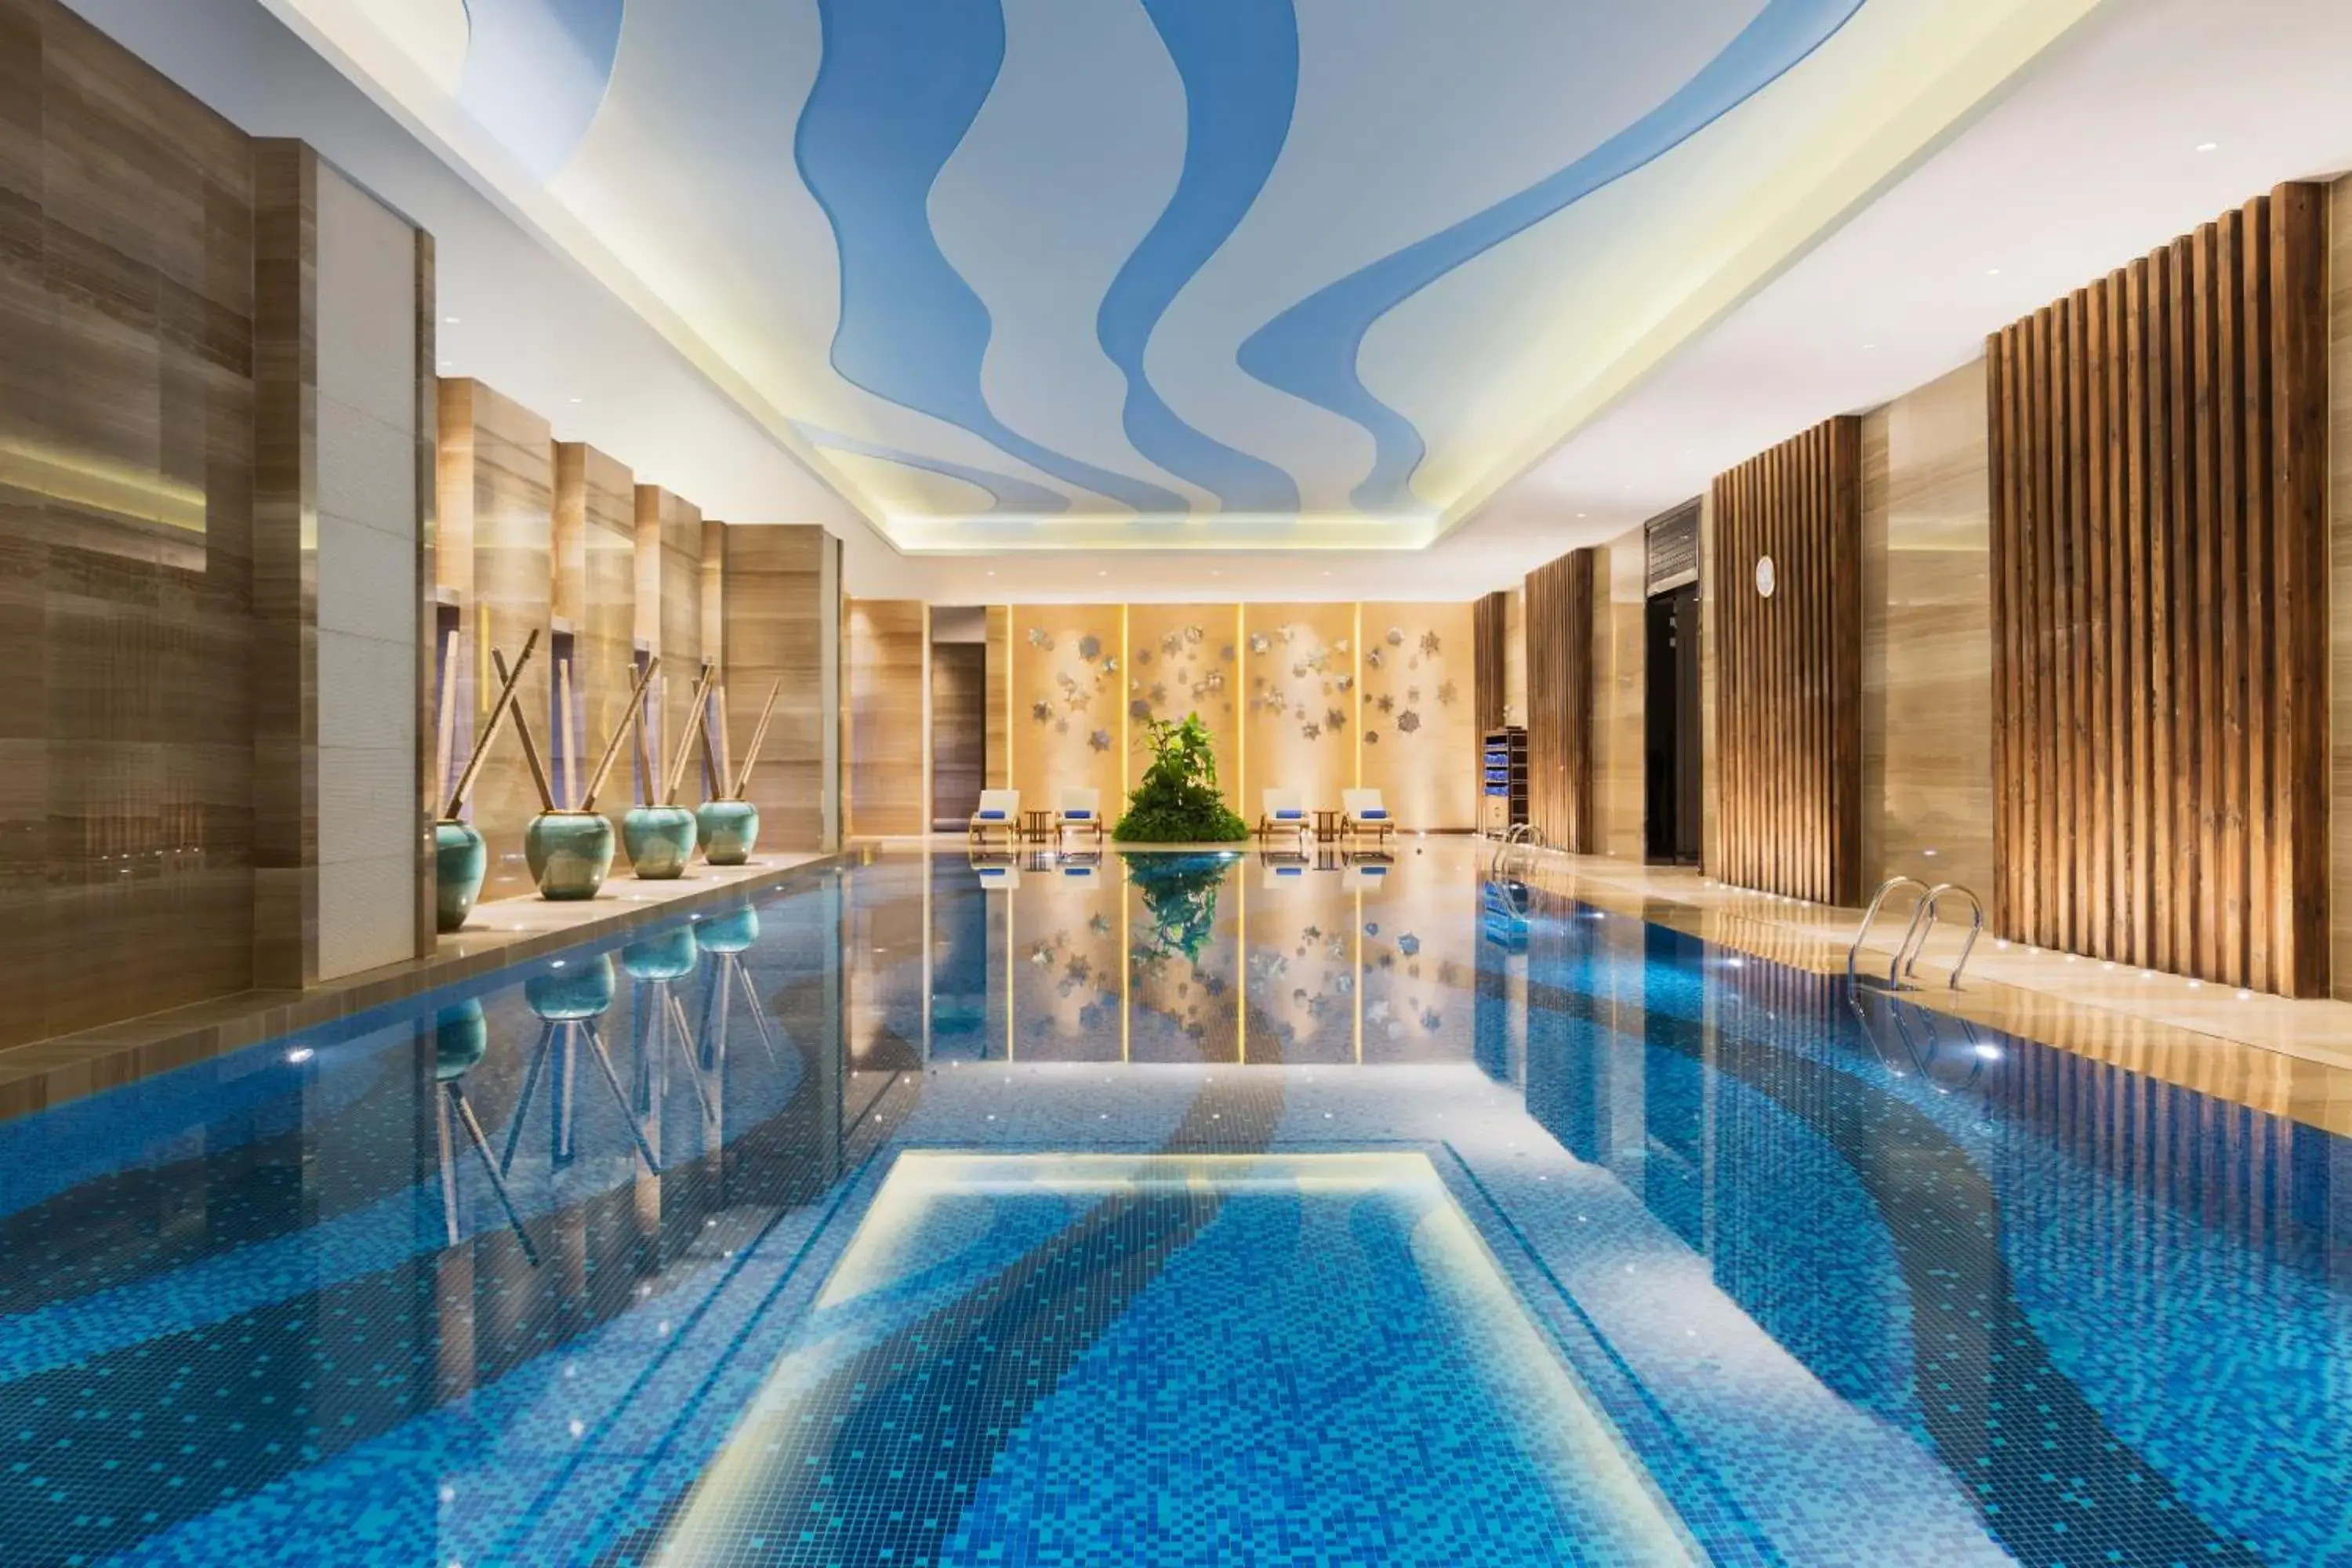 Swimming Pool in Wanda Realm Harbin Hotel